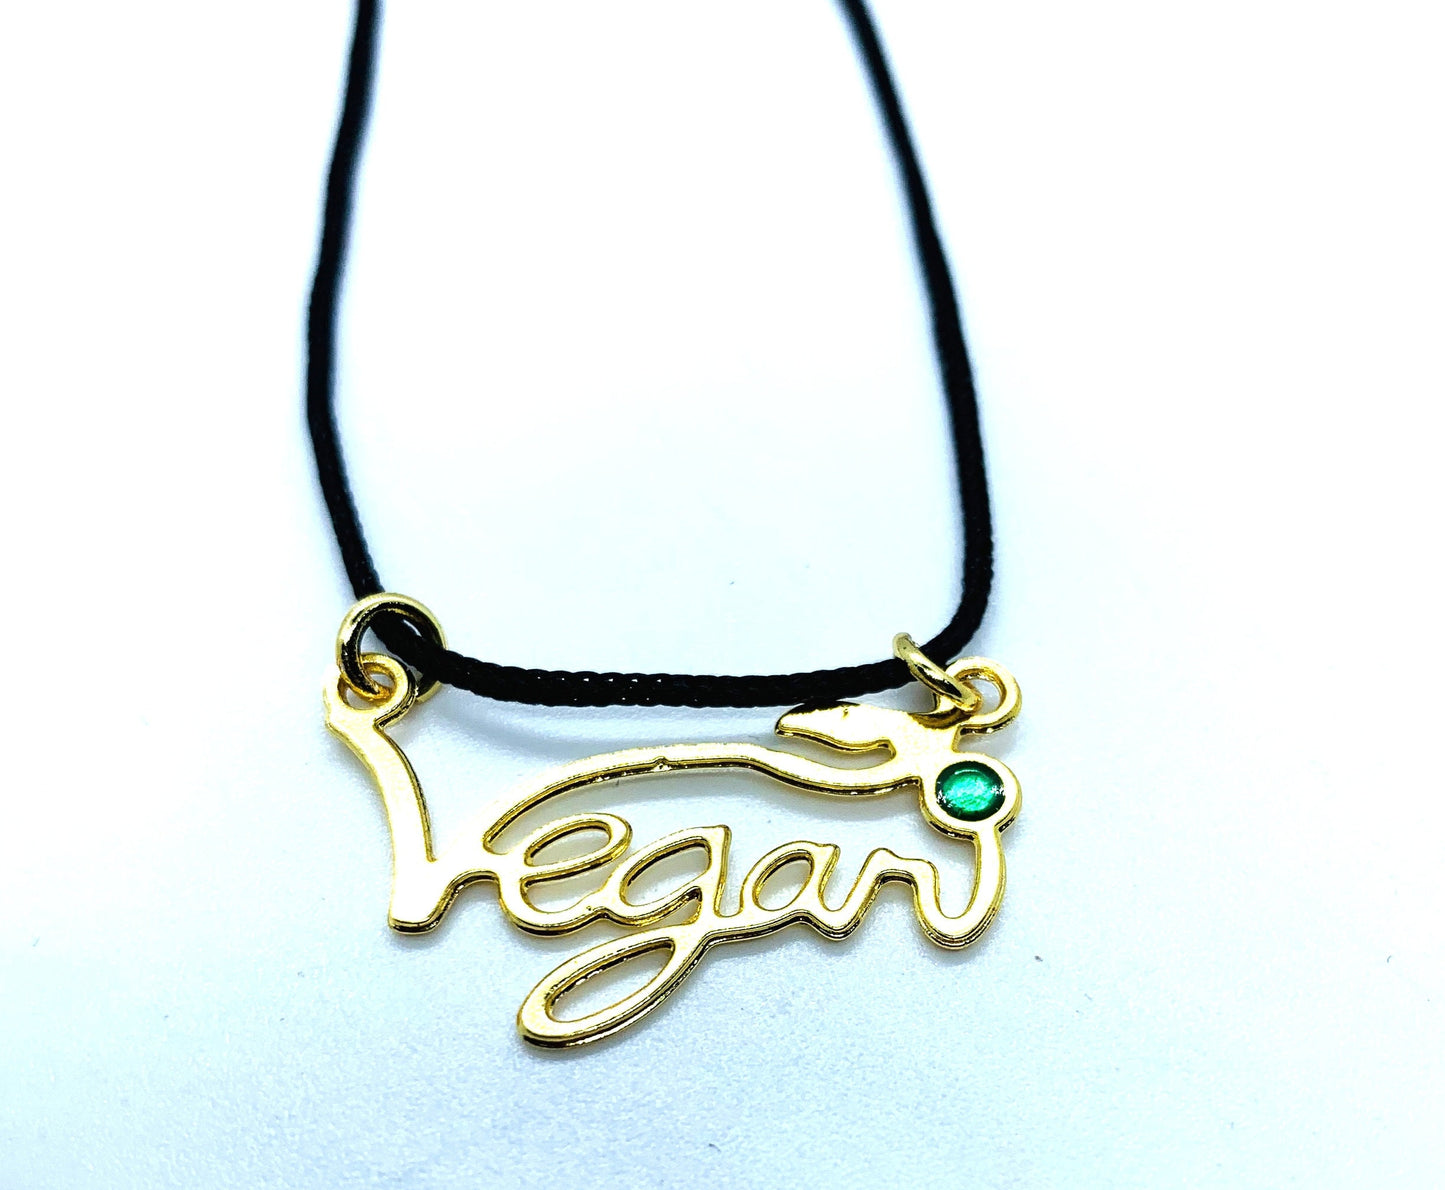 V for vegan necklace - vegan jewellery - subtle vegan message - uk vegan - with leaf- Brass pendant, Golden Silver tone Vegan Necklace